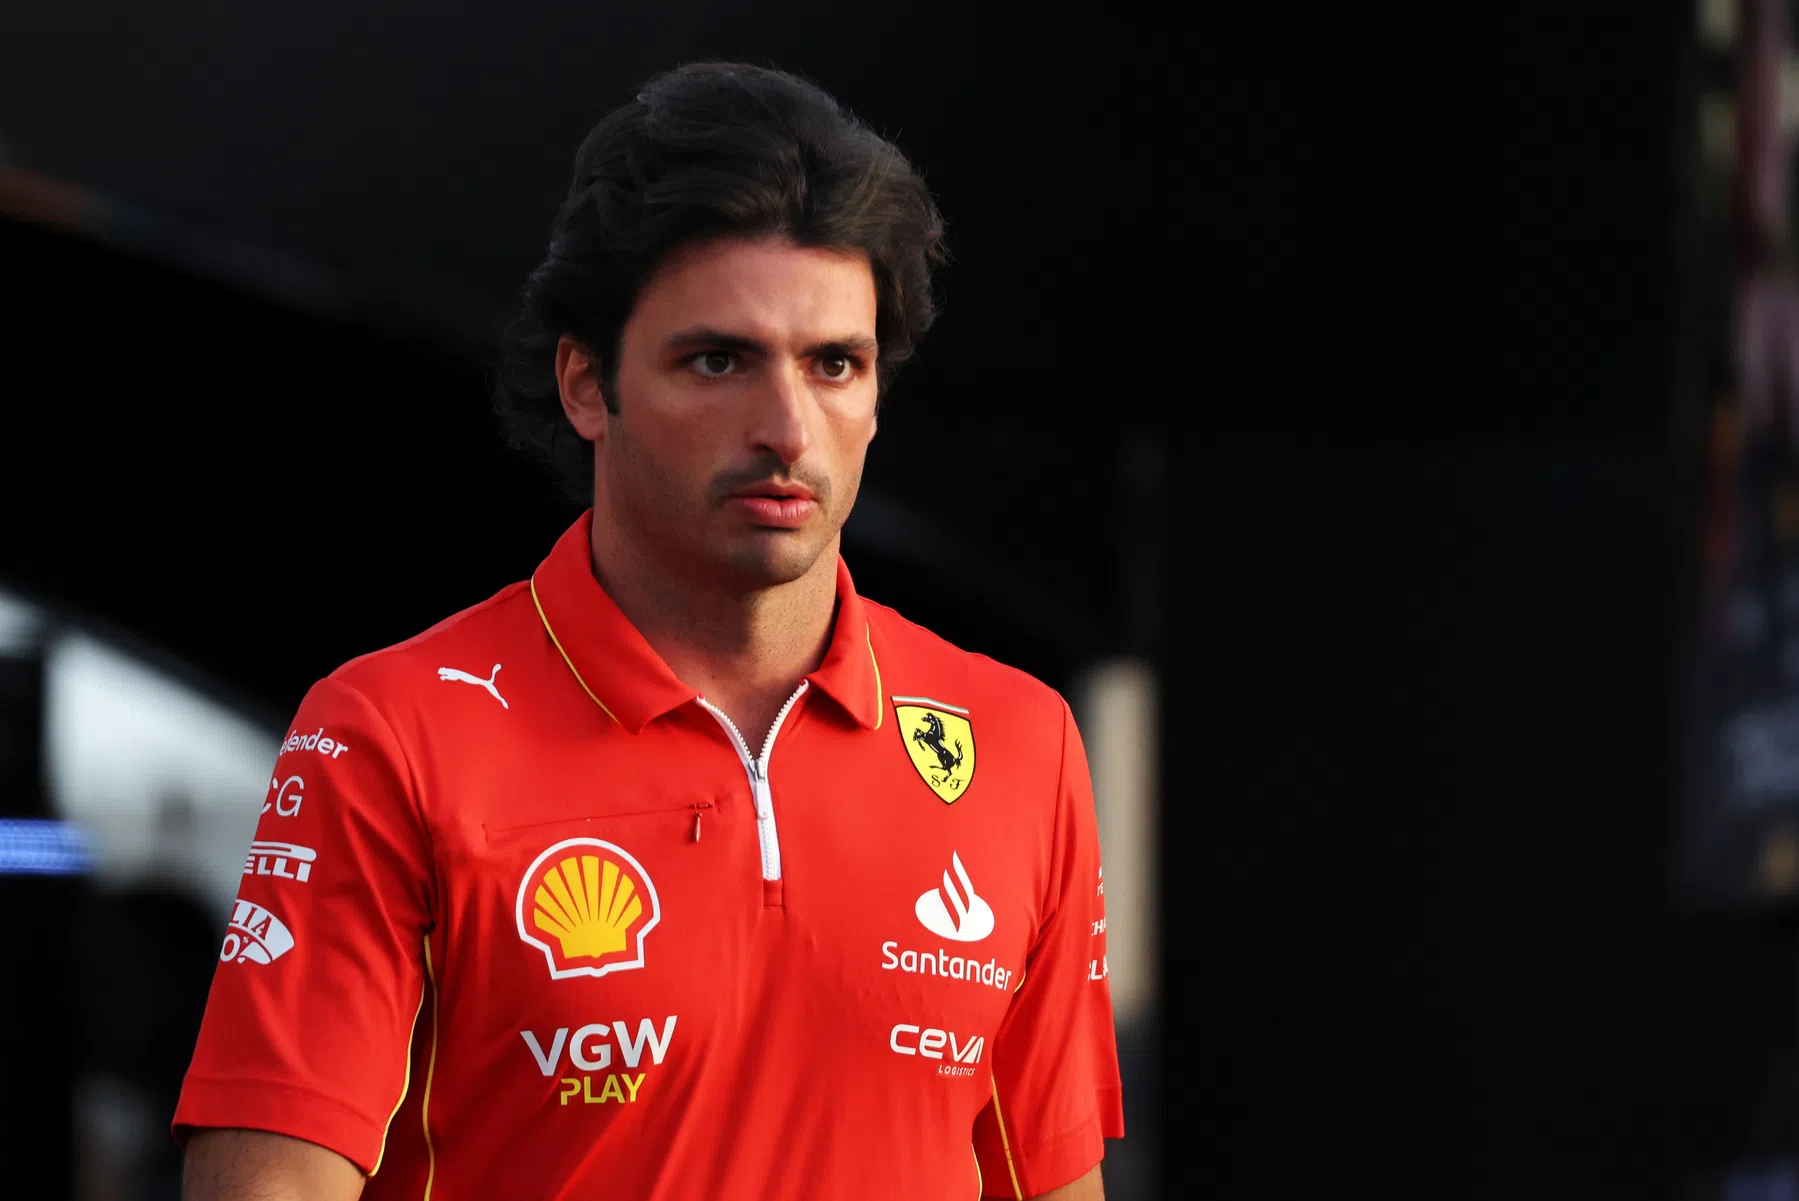 Selon Ferrari, Sainz reprendra le volant à Melbourne